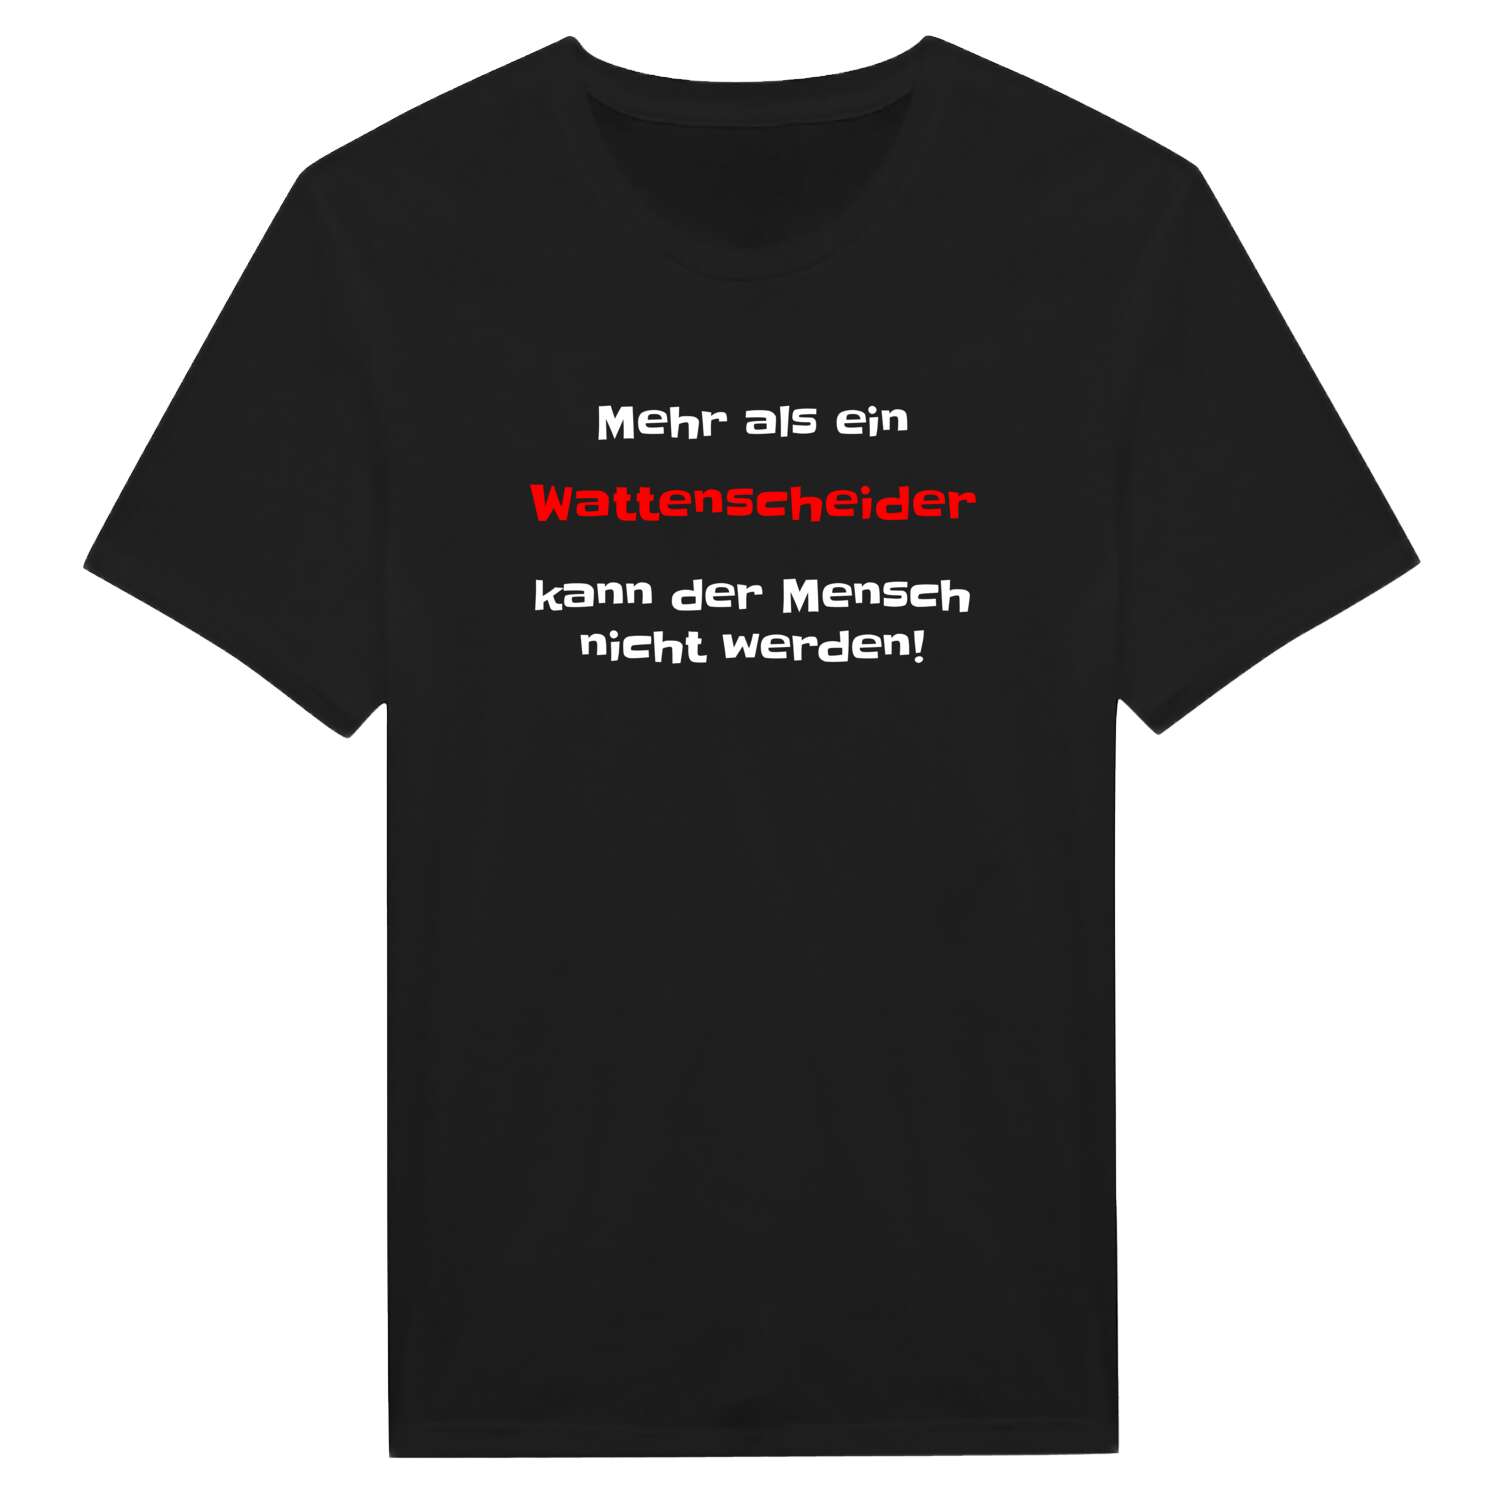 Wattenscheid T-Shirt »Mehr als ein«